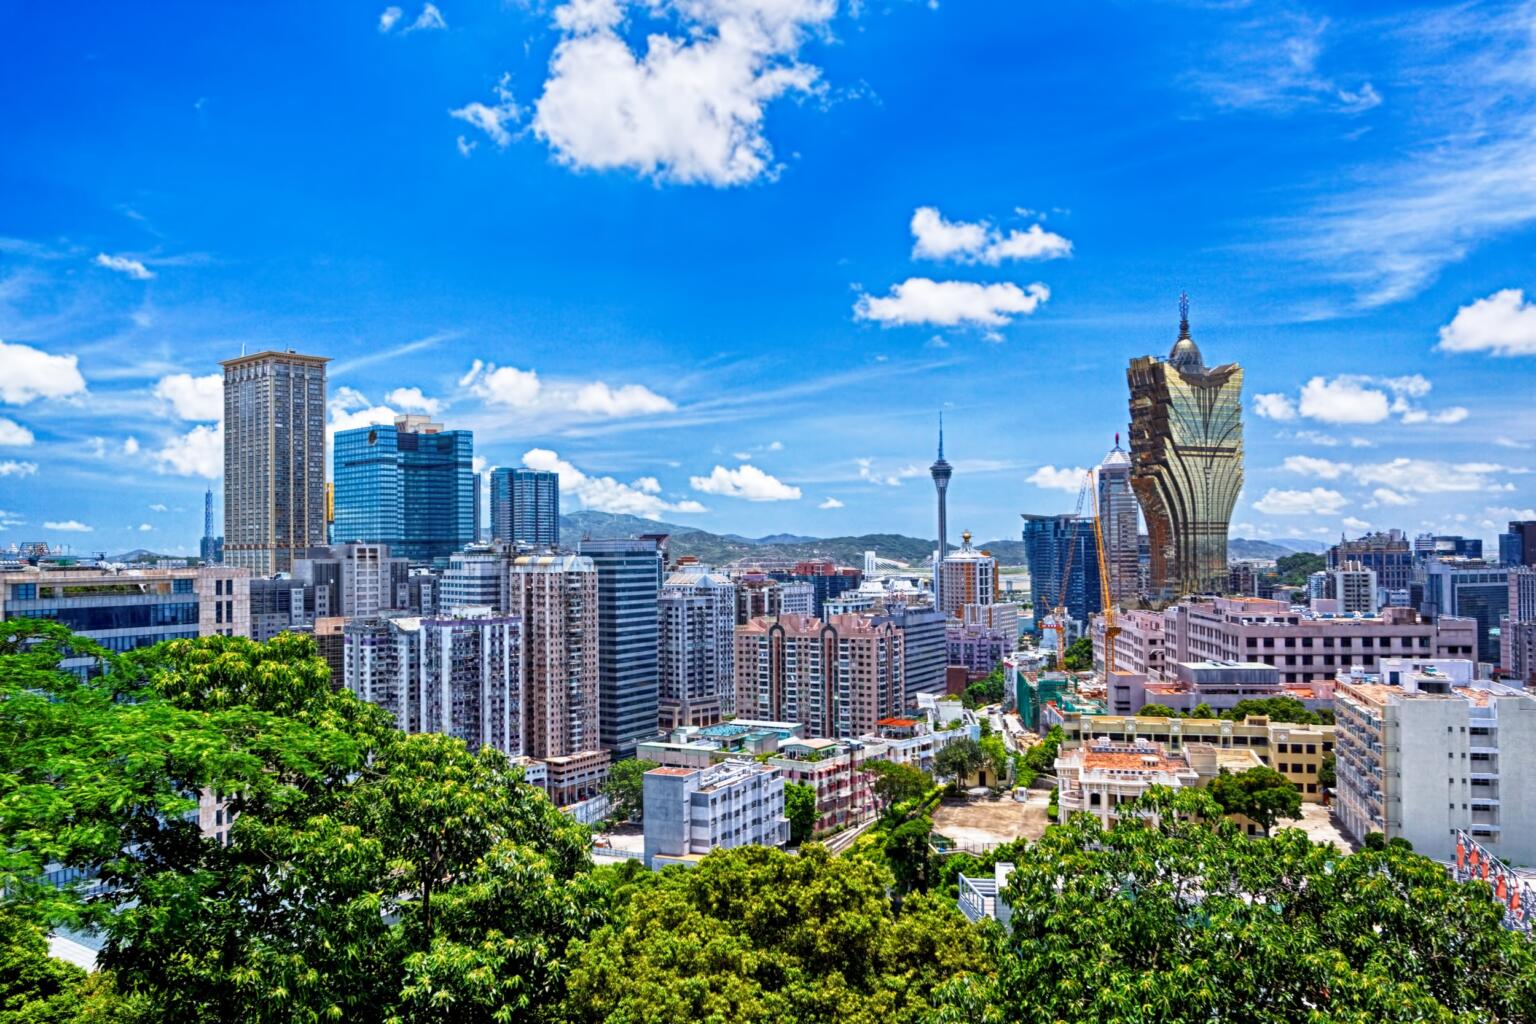 When to visit Macau